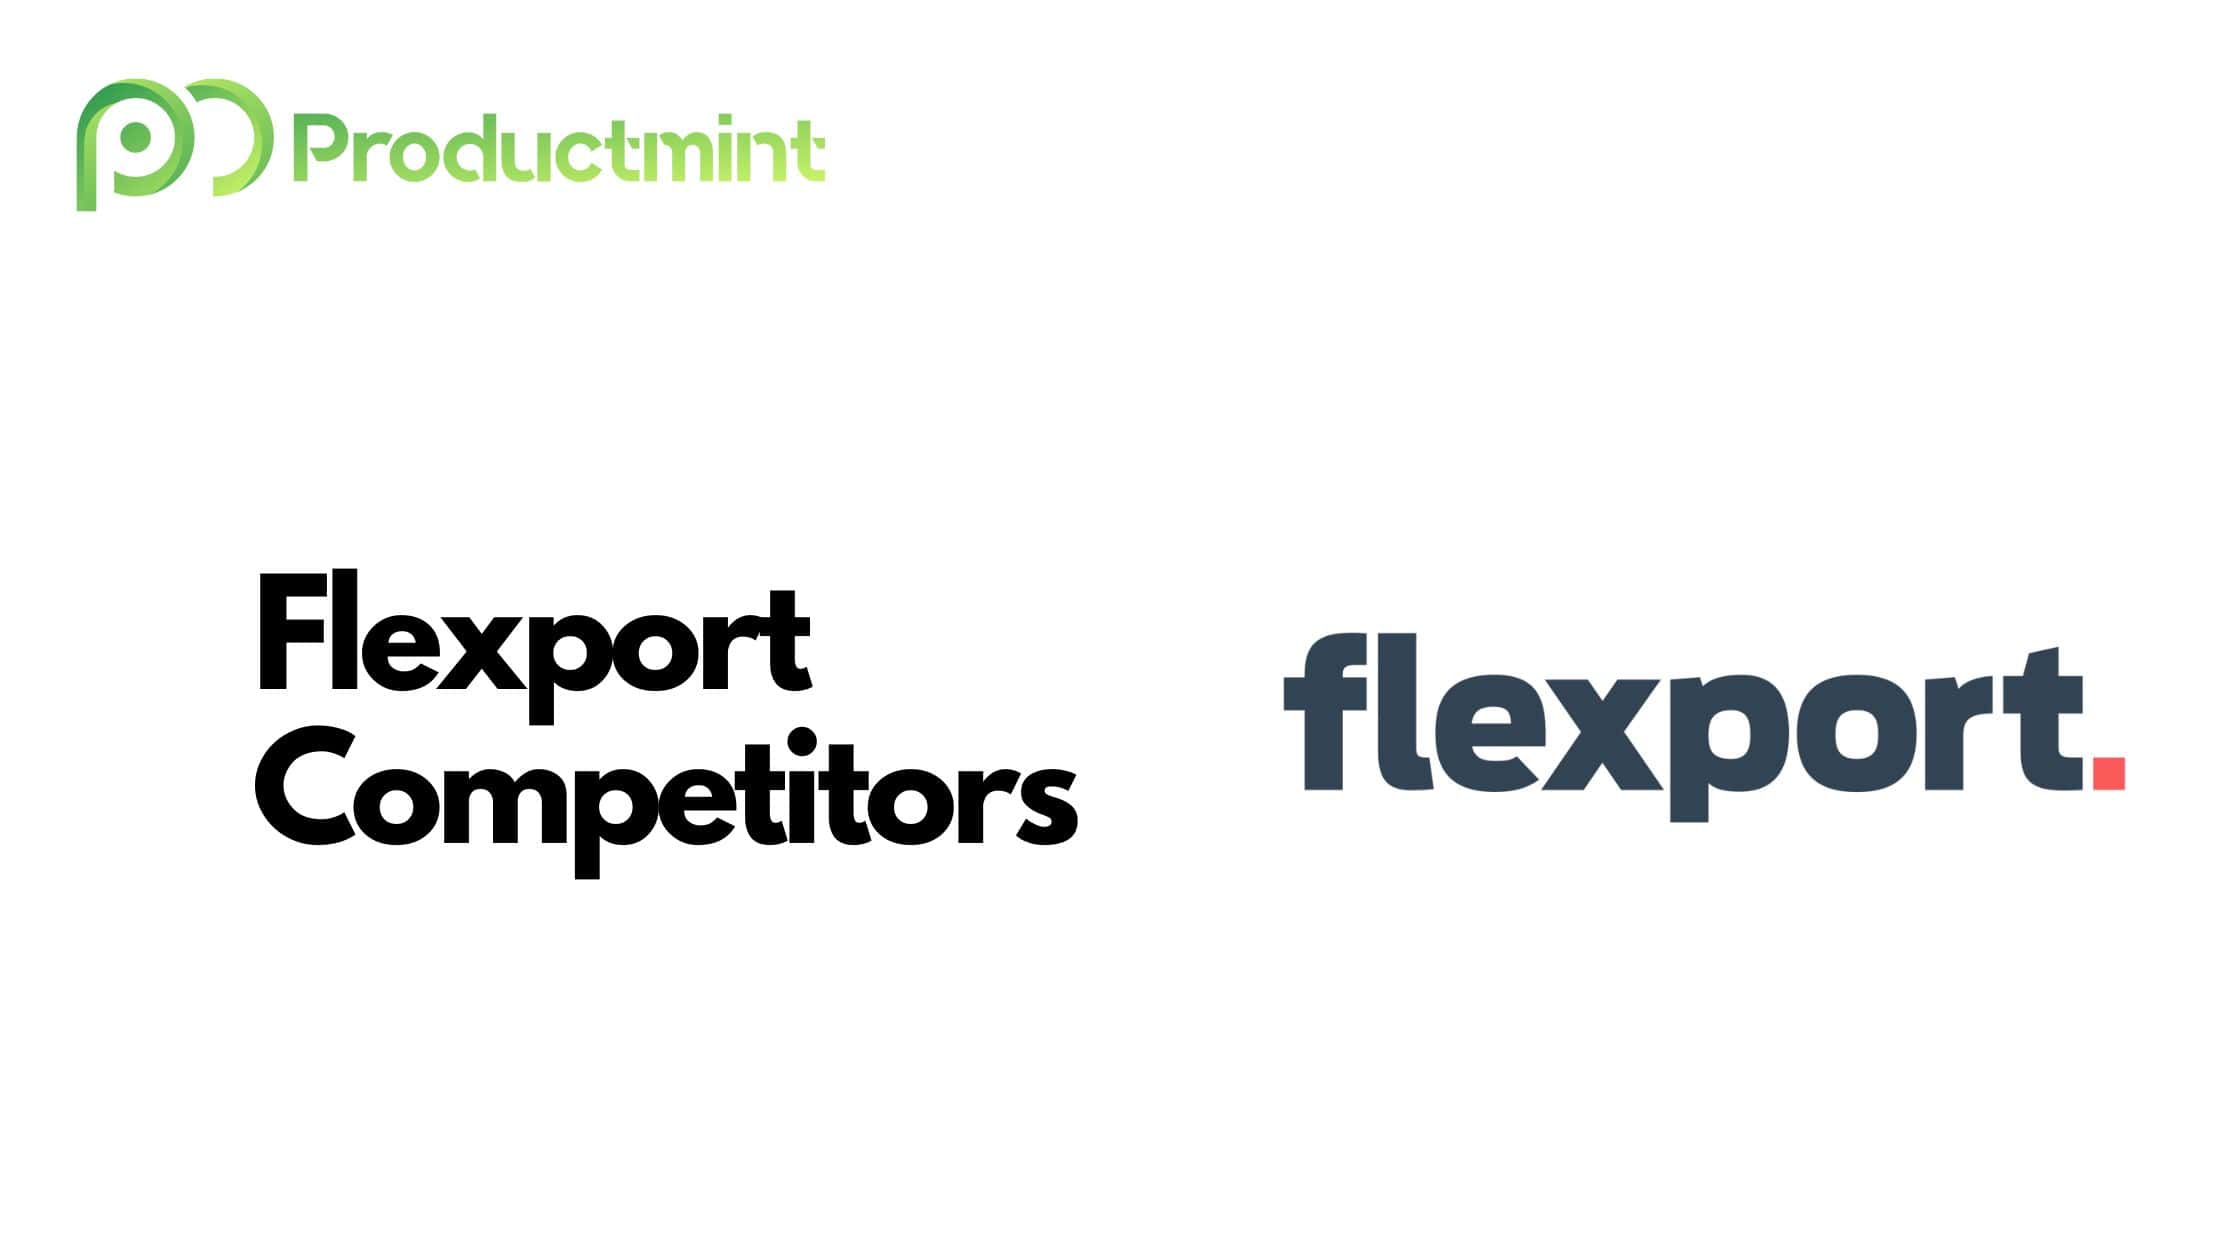 Flexport Competitors